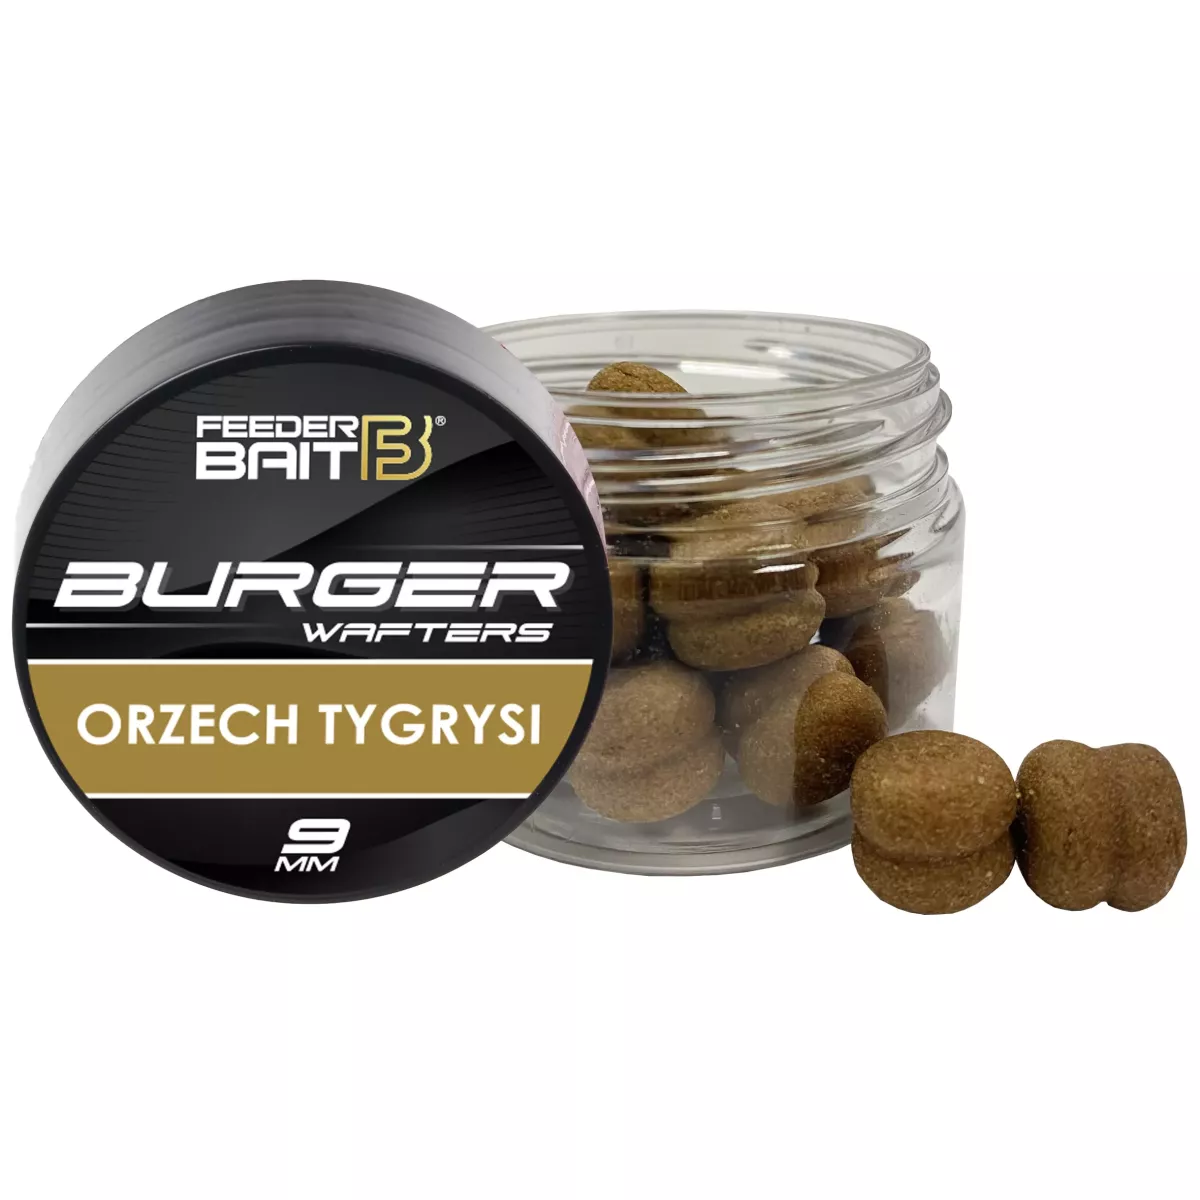 Feeder Bait Burger Wafters 9mm - Orzech Tygrysi